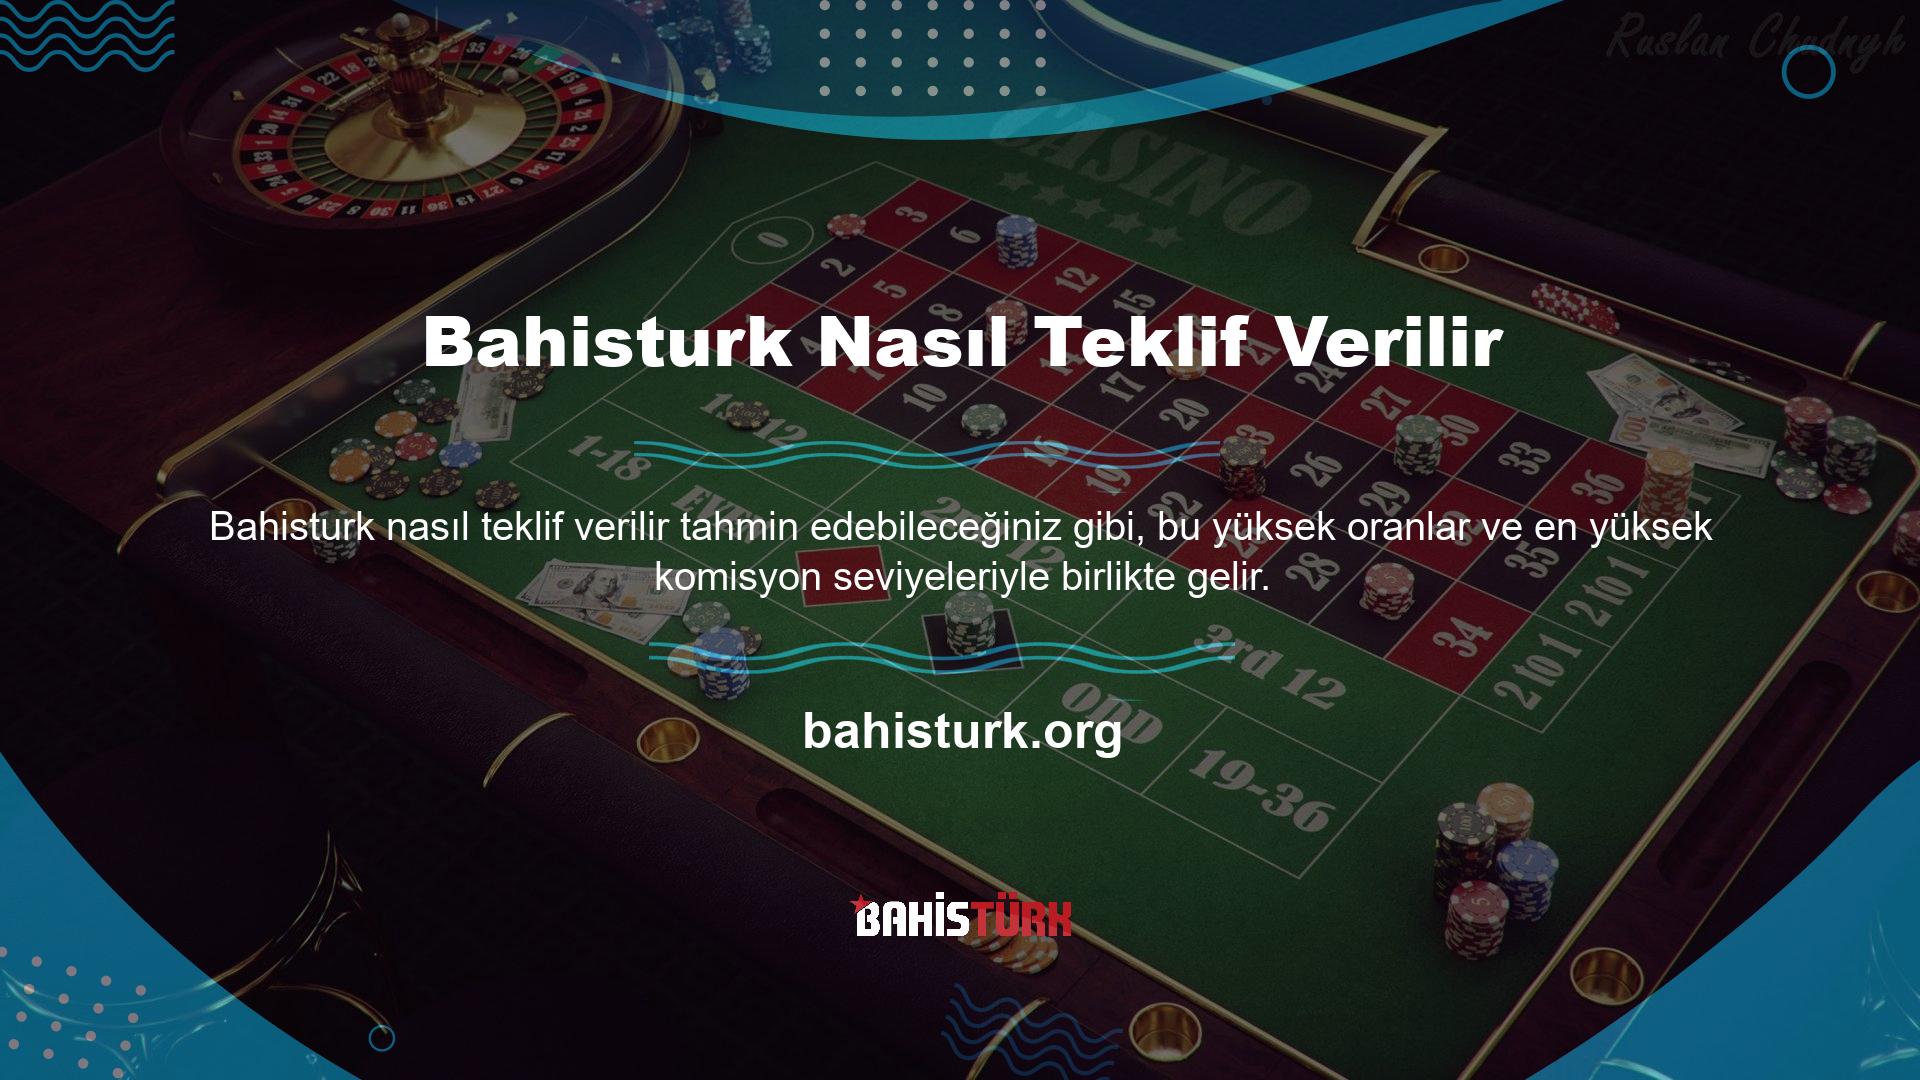 Slot web siteleri komisyon miktarları ve casino bahislerinden daha yararlı bilgiler mi sunuyor? Bahislerinizi en popüler çevrimiçi poker şirketlerine koyun ve süper yüksek bahislerin tadını çıkarın